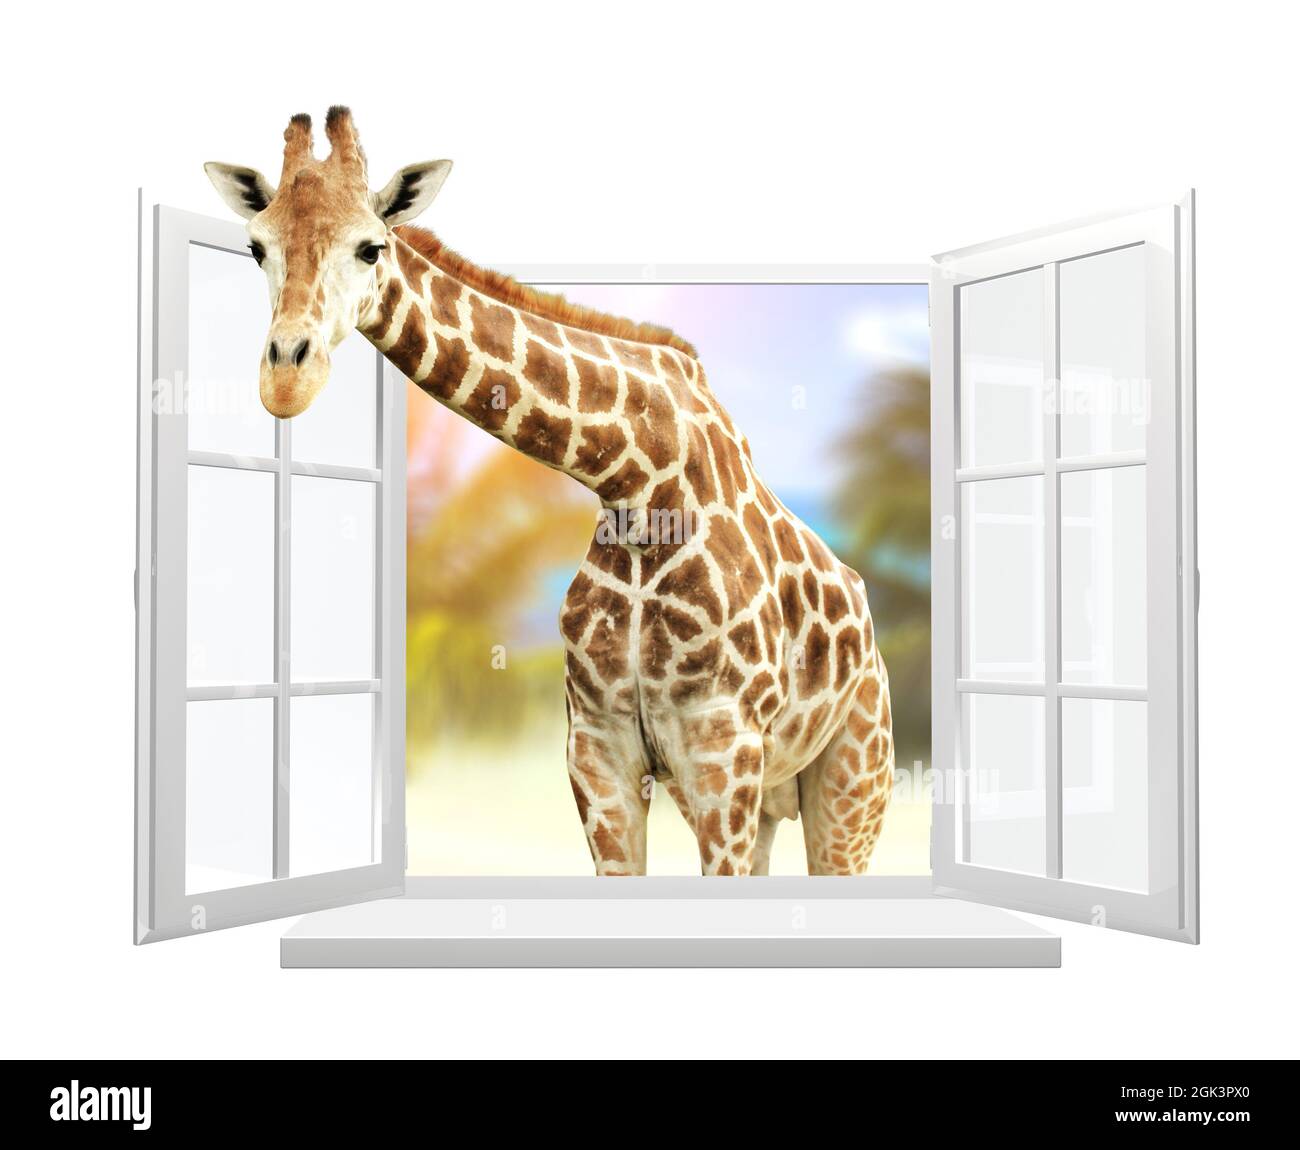 Giraffe schaut durch ein Fenster. Niedliche neugierige Giraffe starren an das geöffnete Fenster. Isoliert auf weißem Hintergrund. 3d-Rendering Stockfoto